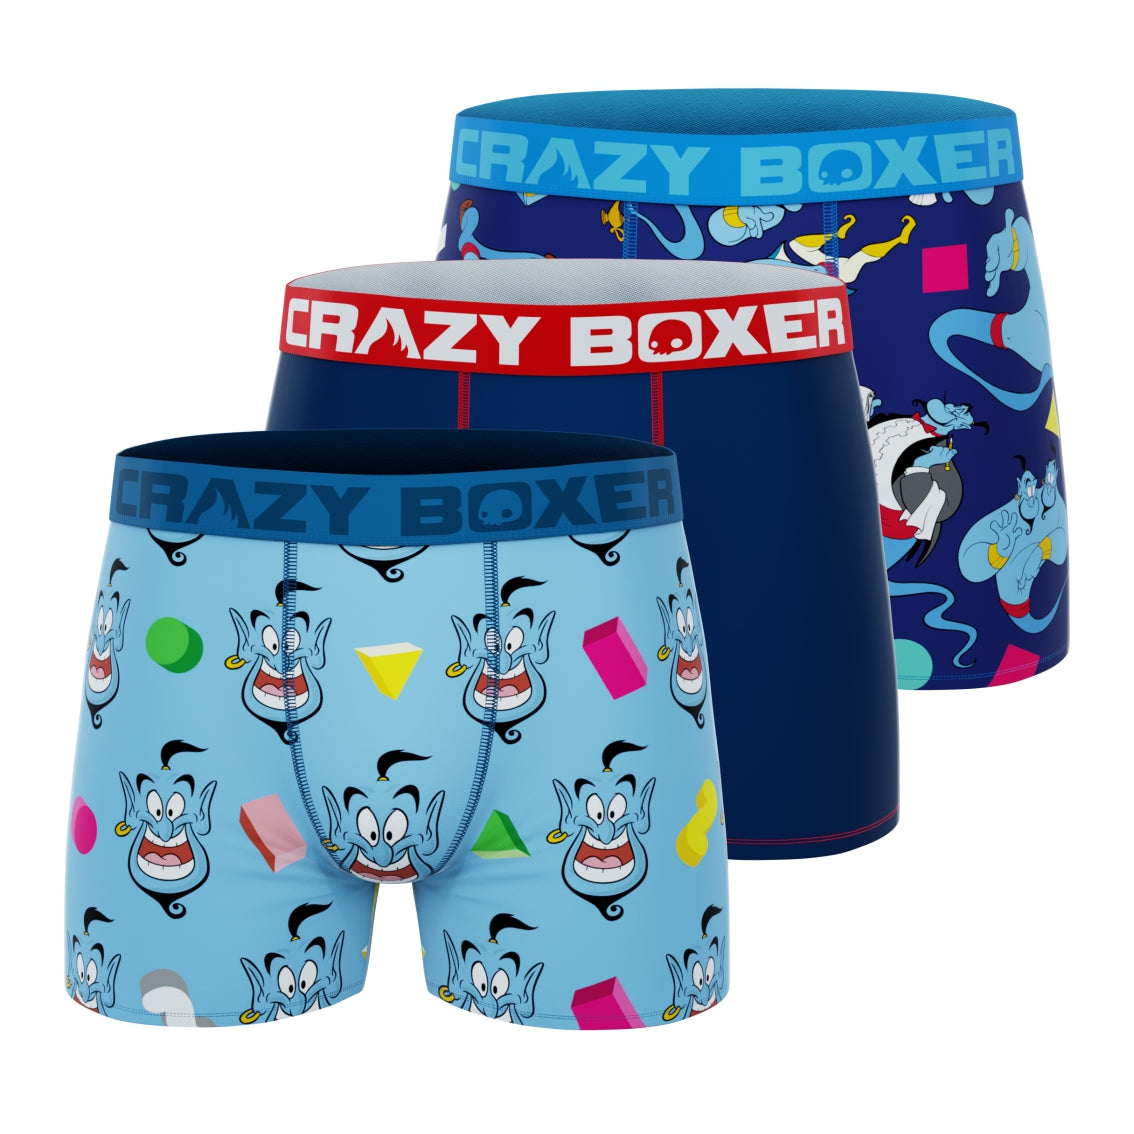 CRAZYBOXER Spongebob Fun Men's Boxer Briefs (3 pack)